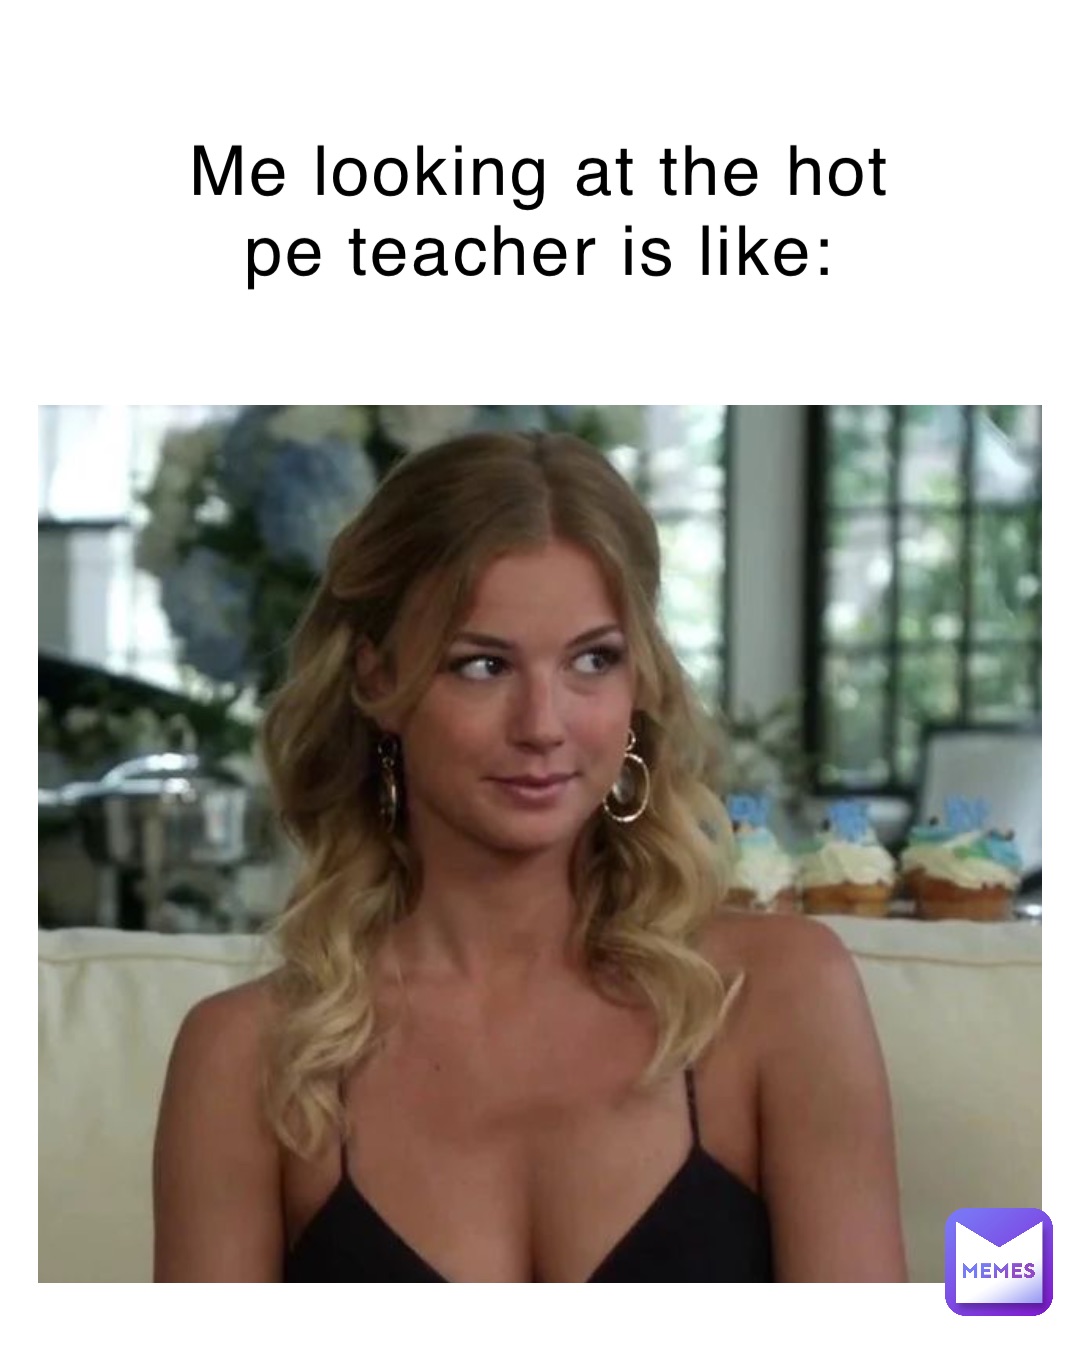 hot teacher meme